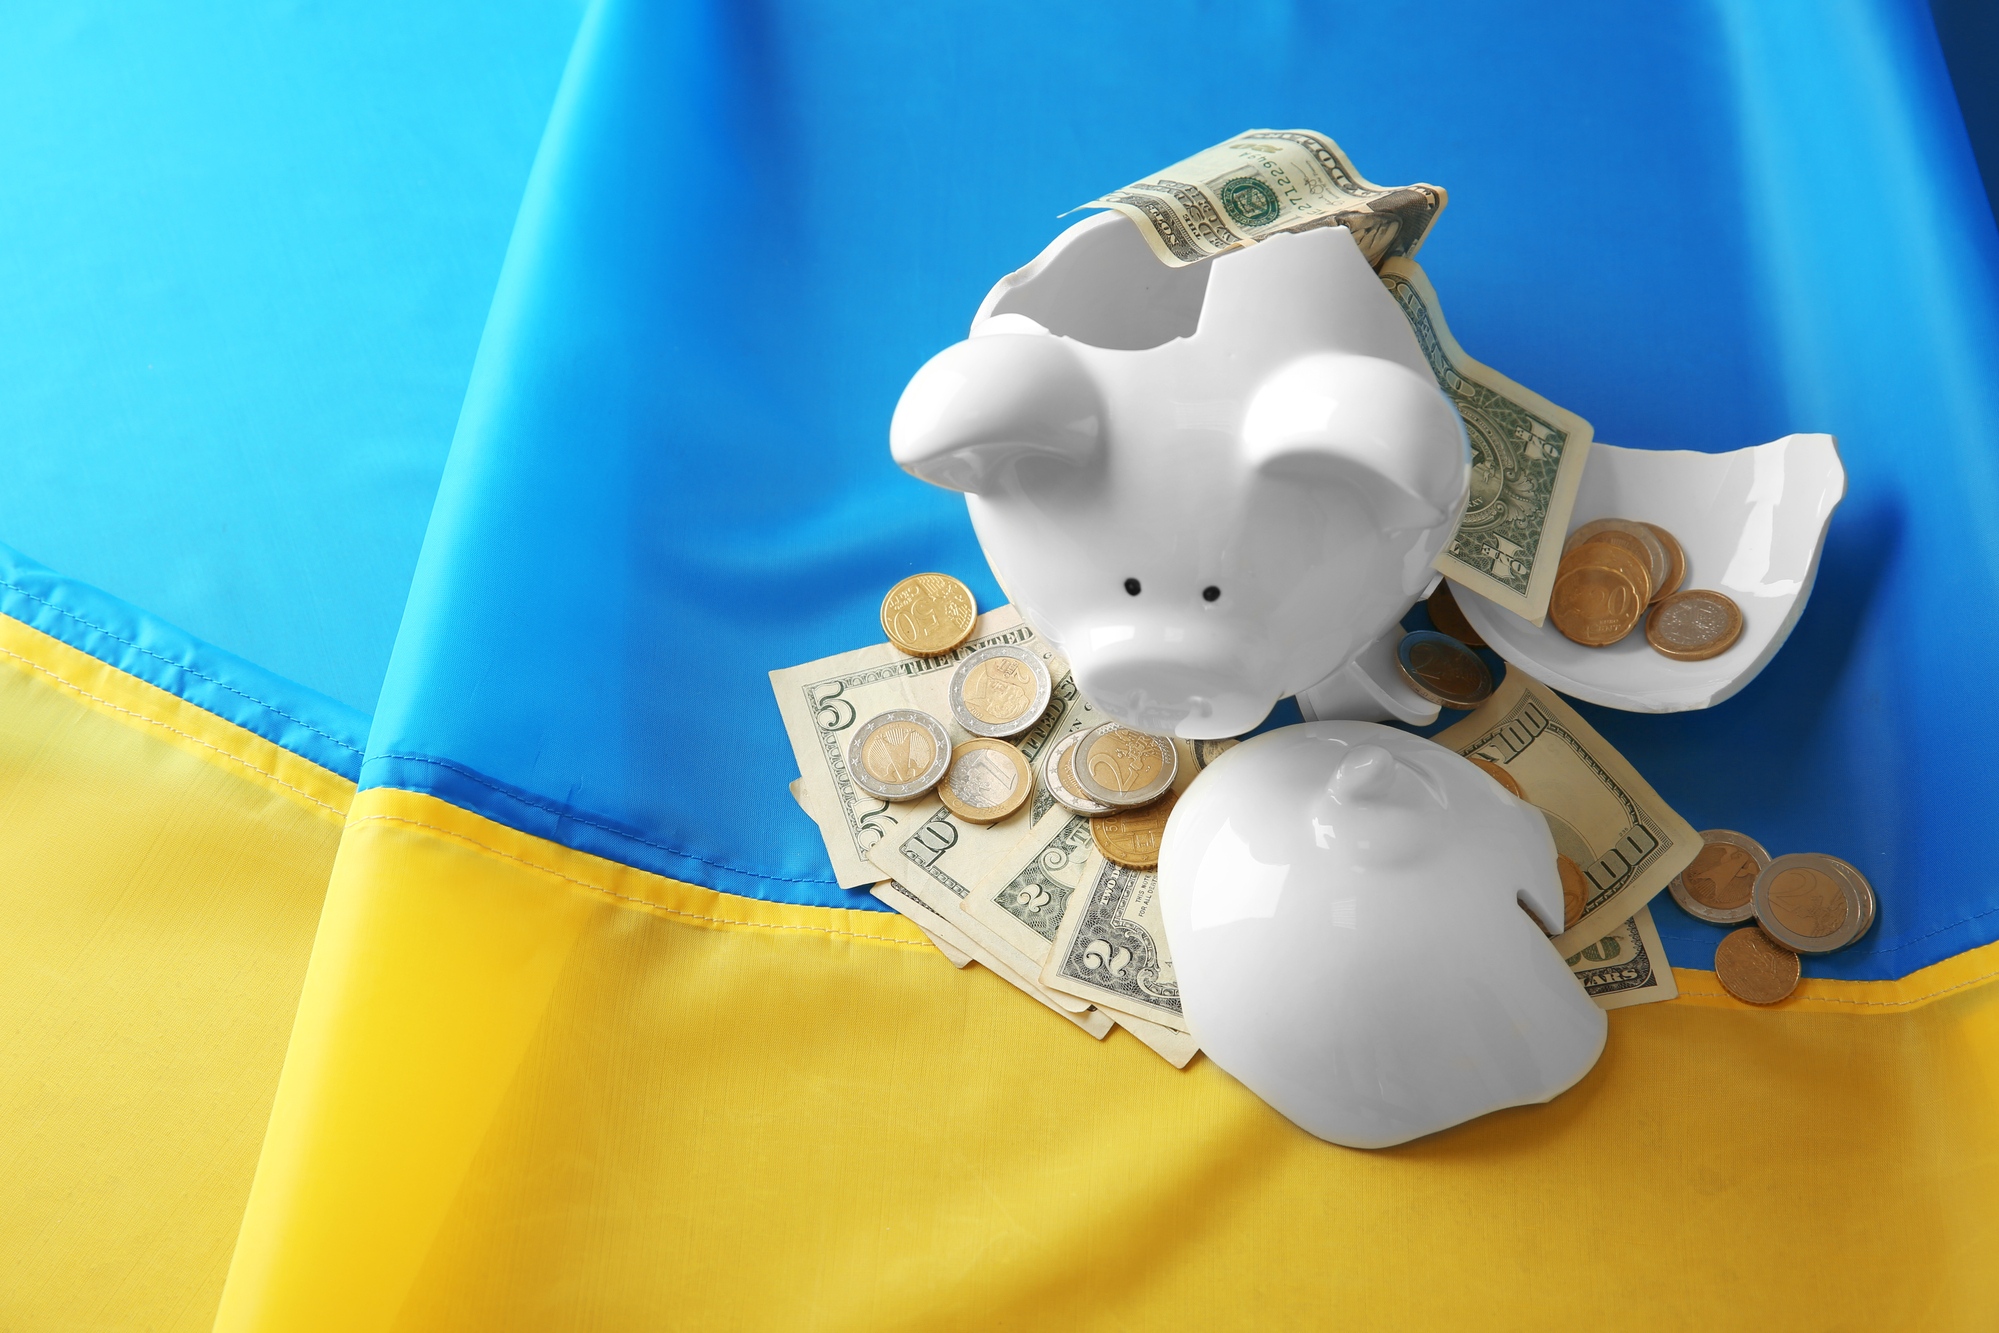 розбита скарбничка з доларами на фоні українського прапора